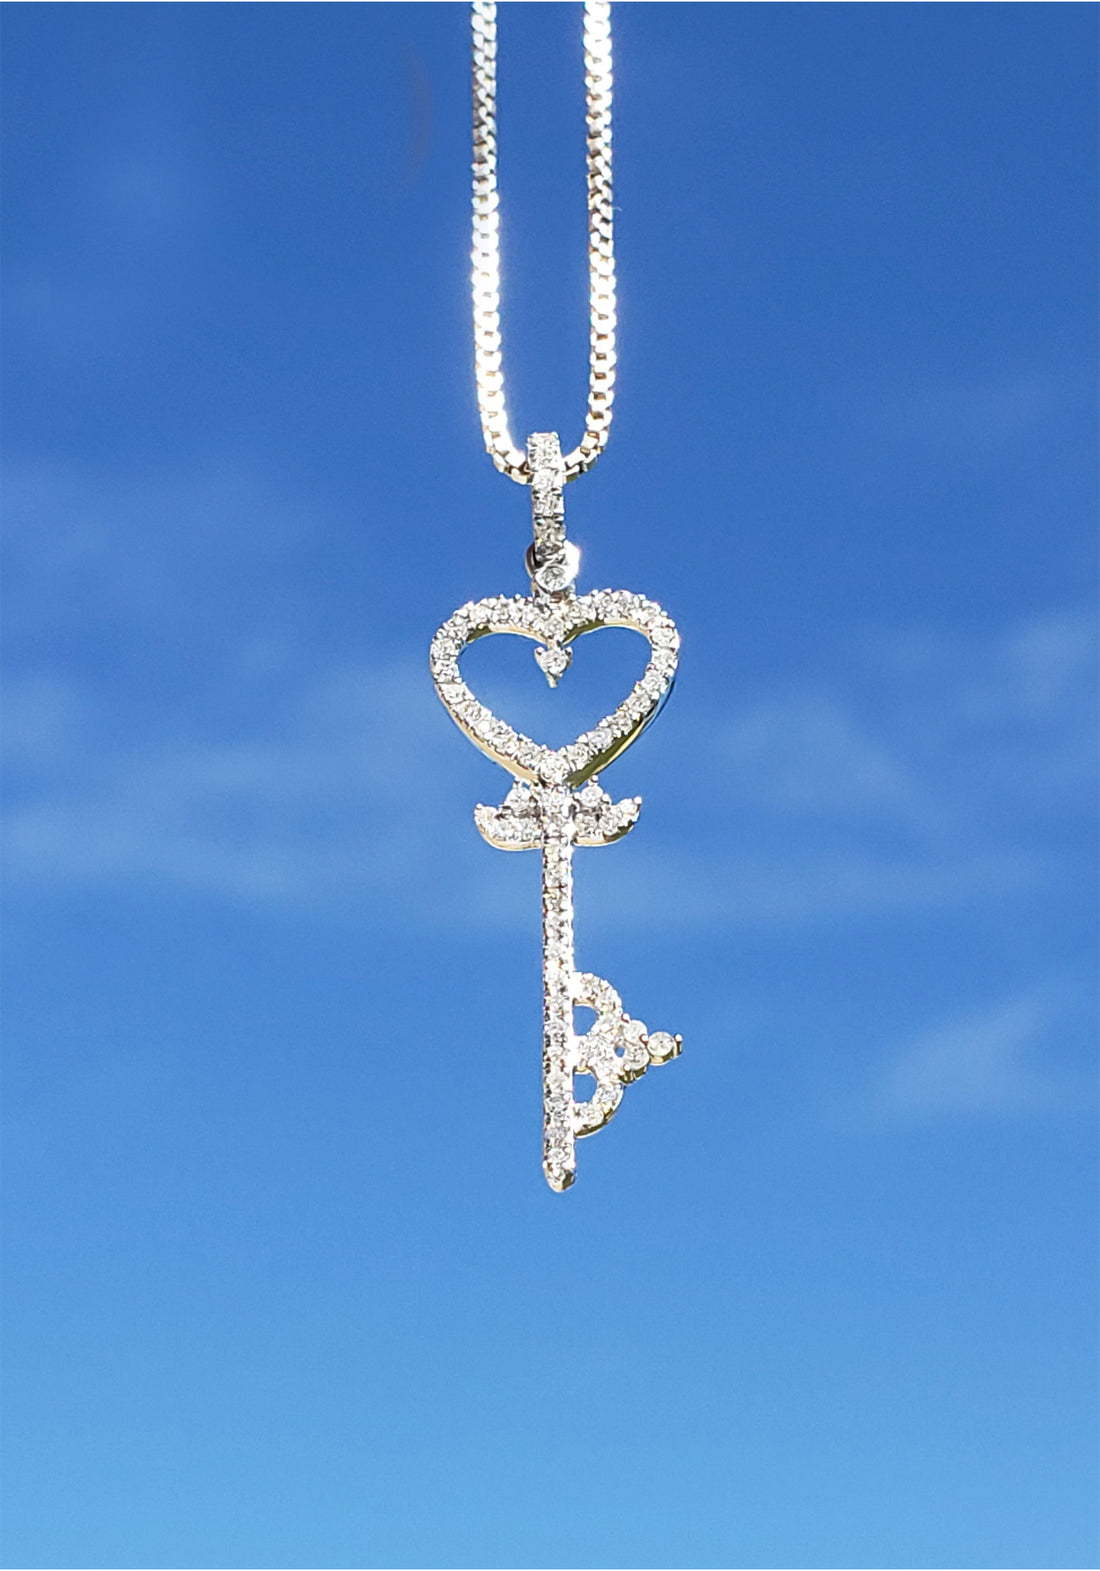 10k White Gold with White Diamond Heart Key Pendant